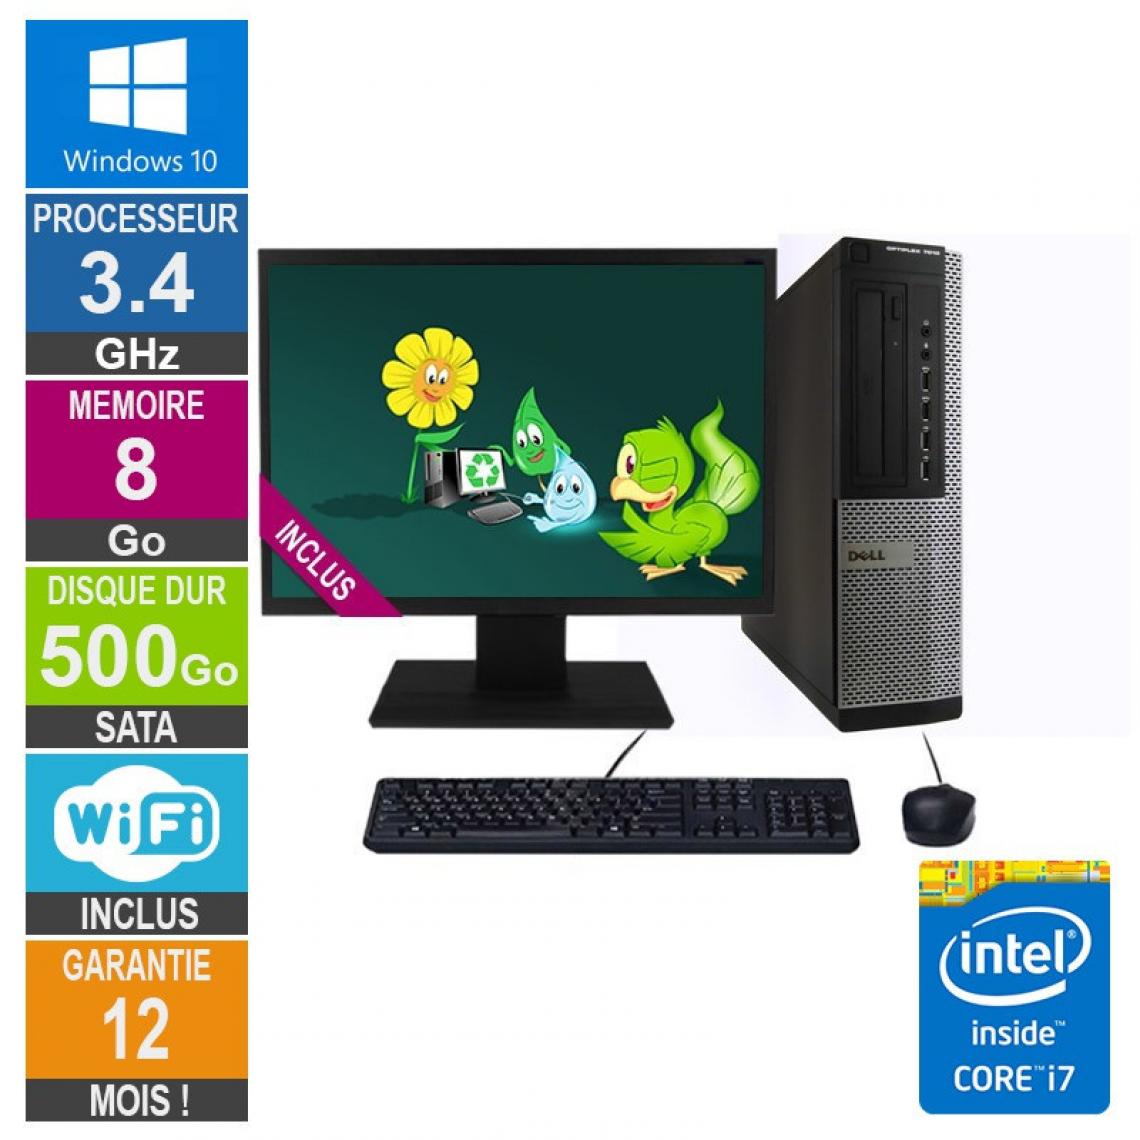 Dell - PC Dell 7010 DT Core i7-3770 3.40GHz 8Go/500Go Wifi W10 + Ecran 19 - PC Fixe